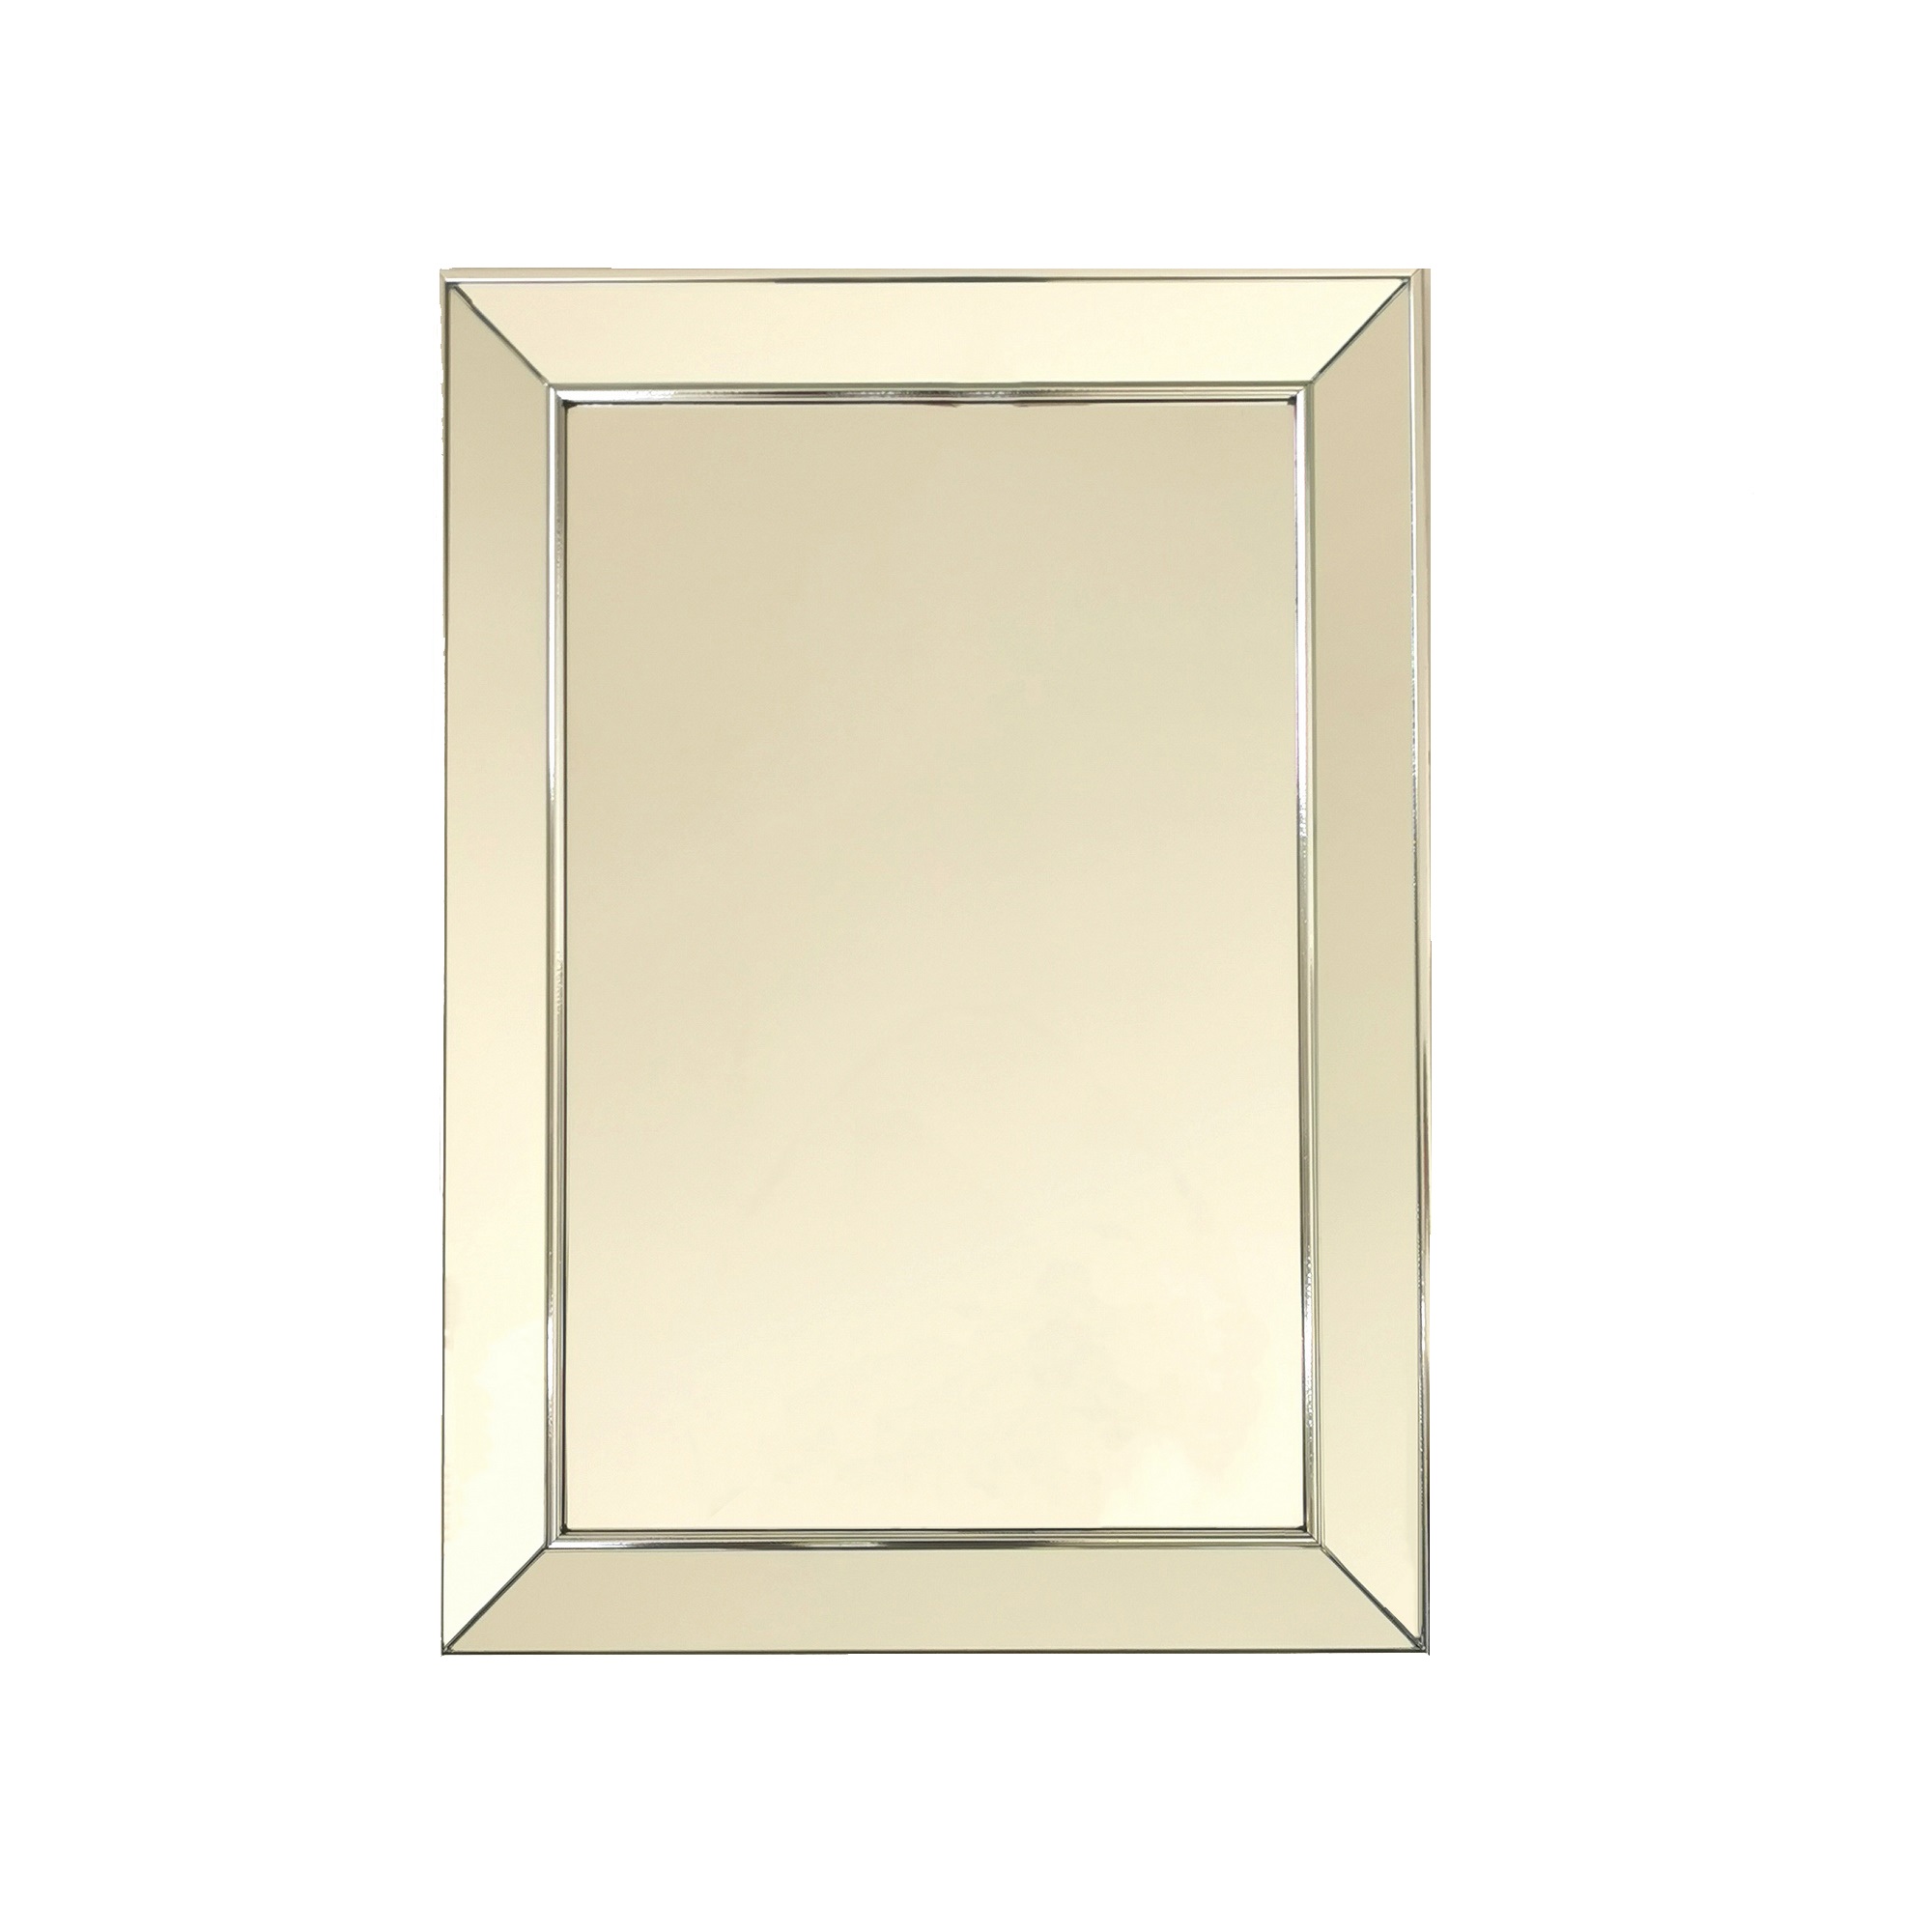 A408 Silver Framed Mirror